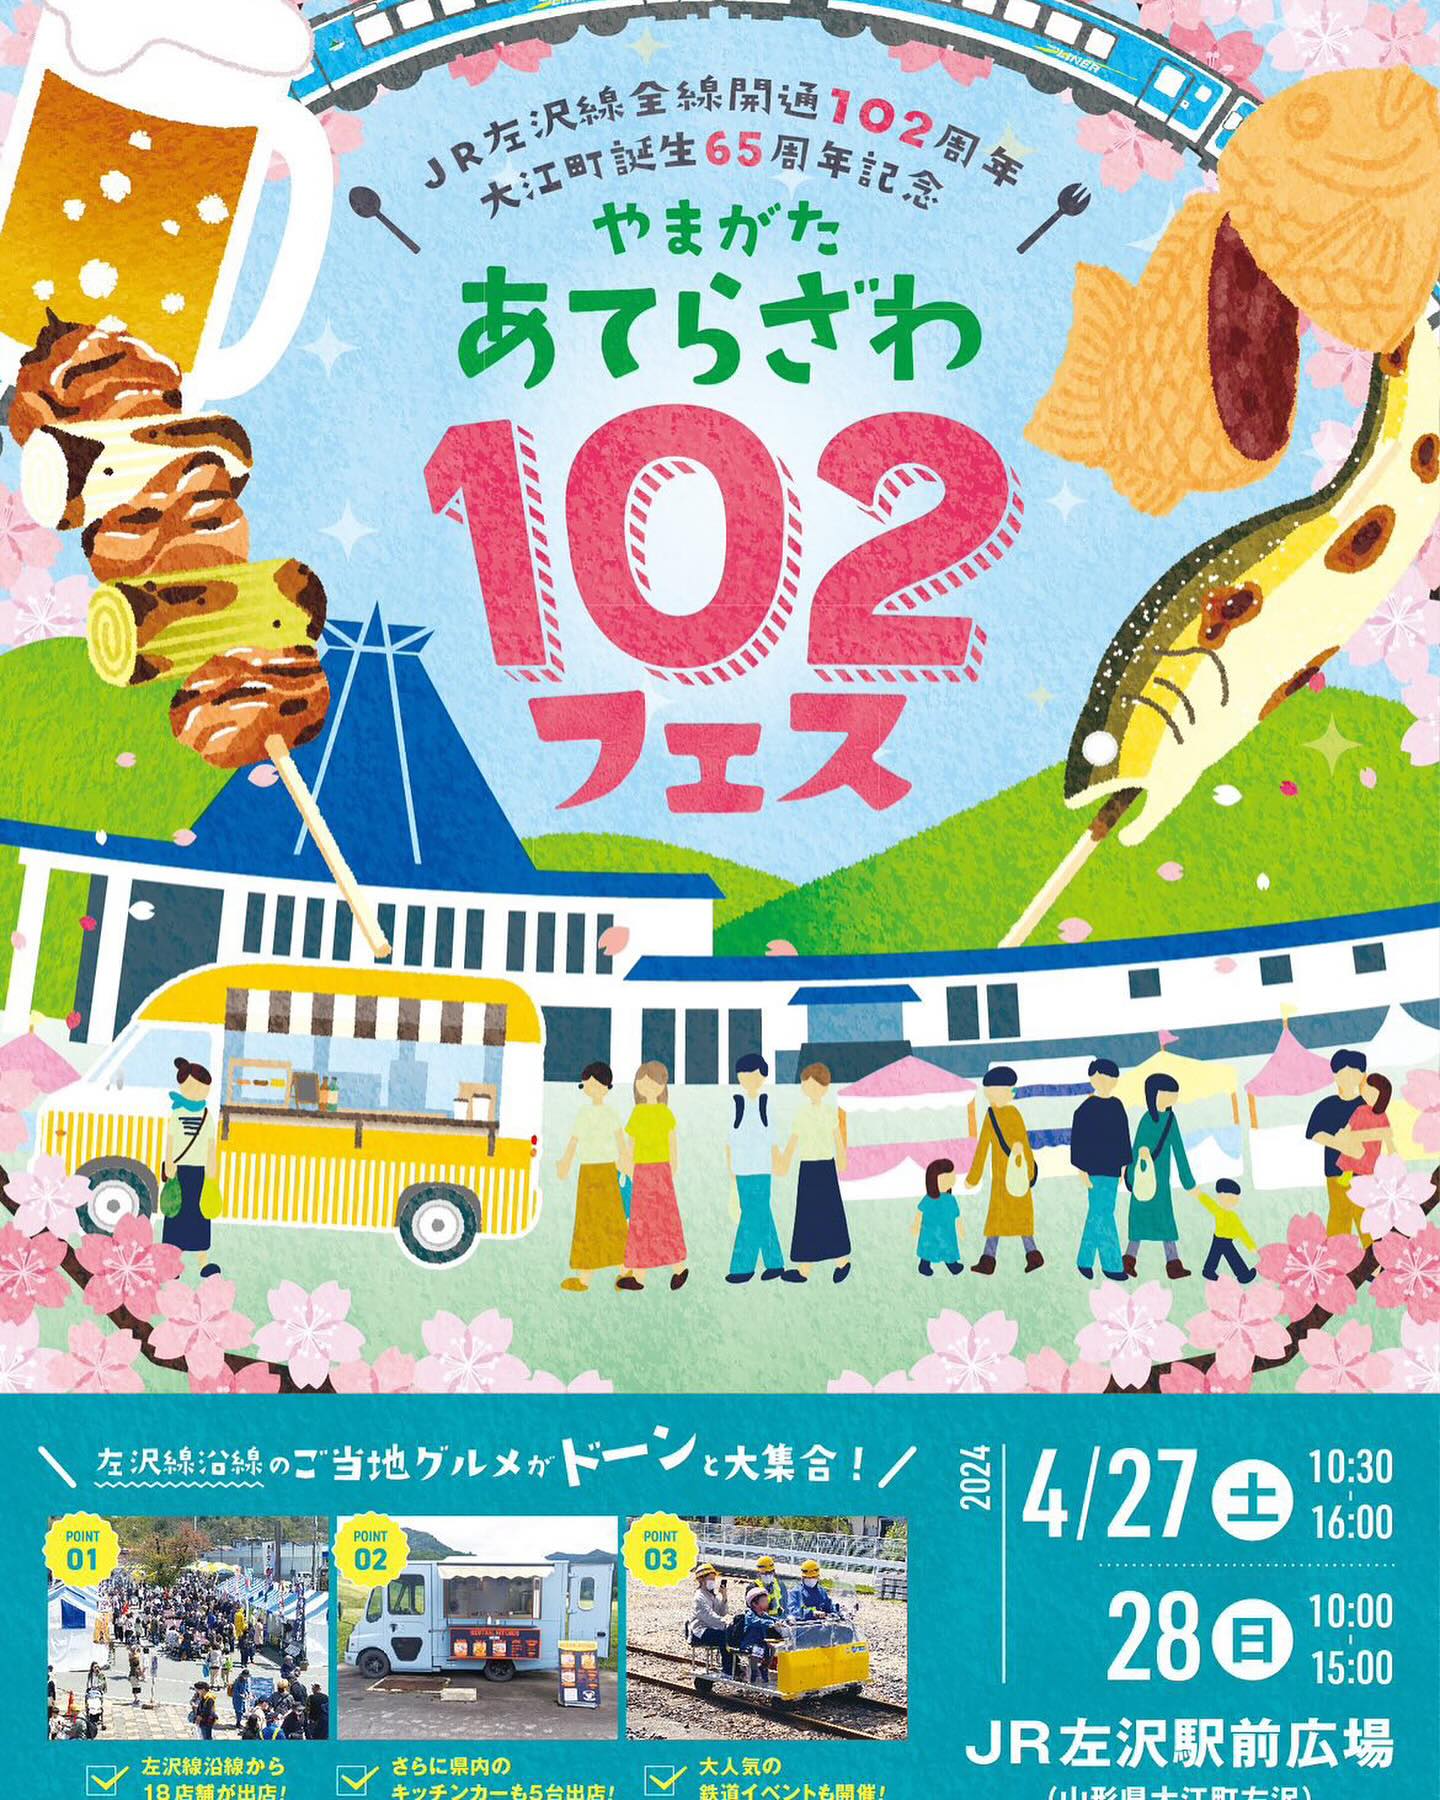 4/27、28
JR左沢駅前広場にて
やまがたあてらざわ102フェス

なんと出店者向け資料が32ページ️
主催者の熱意がビリビリと伝わってきます️
両日ともクラッカーは出張販売します。